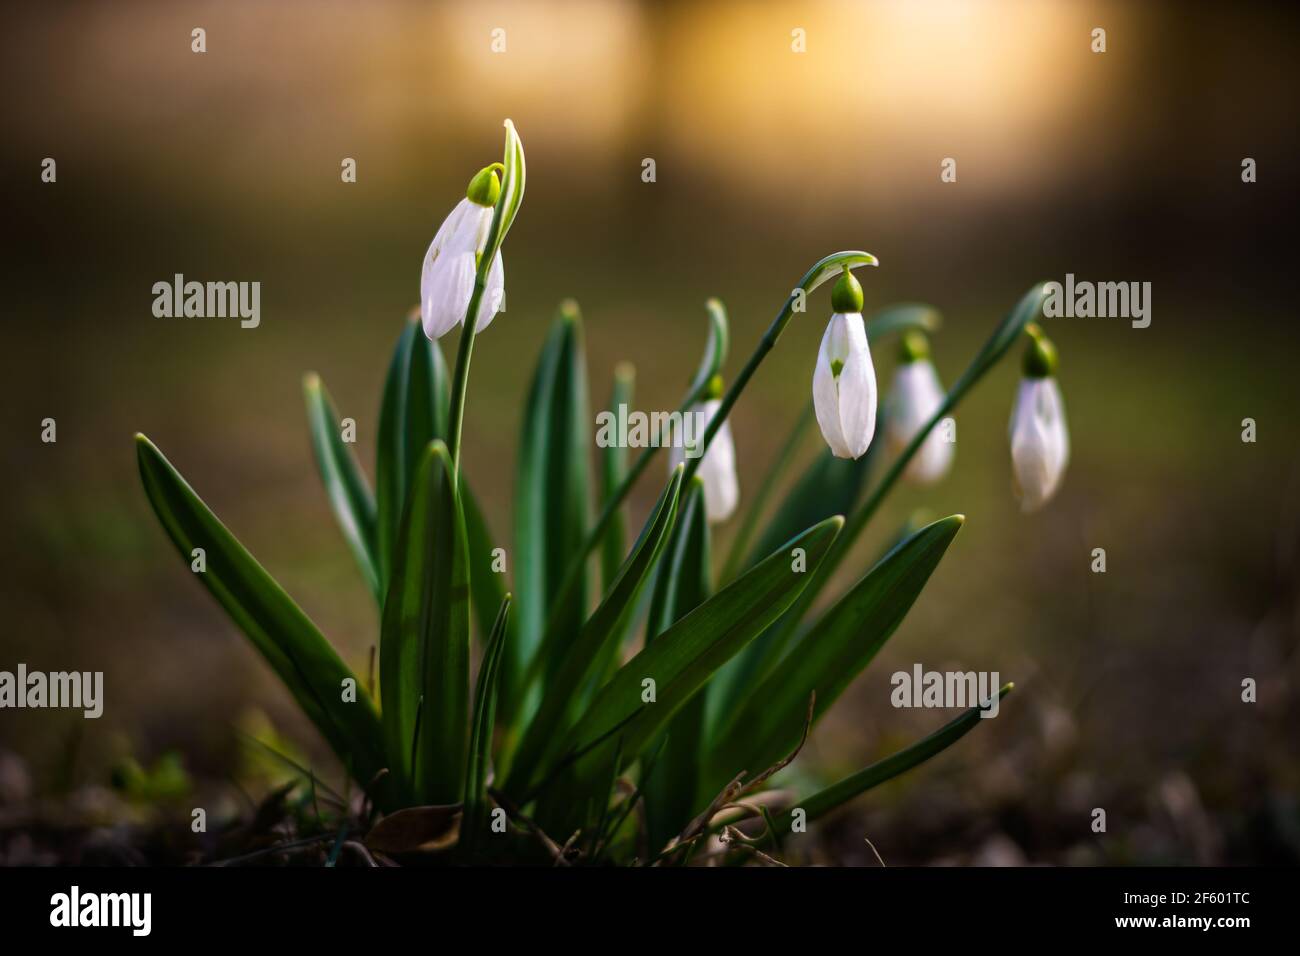 Schneeglöckchen oder gewöhnliche Schneeglöckchen (Galanthus nivalis) blühen im Wald mit warmem Sonnenschein im Hintergrund im Frühling. Die ersten Blumen des Frühlings Stockfoto